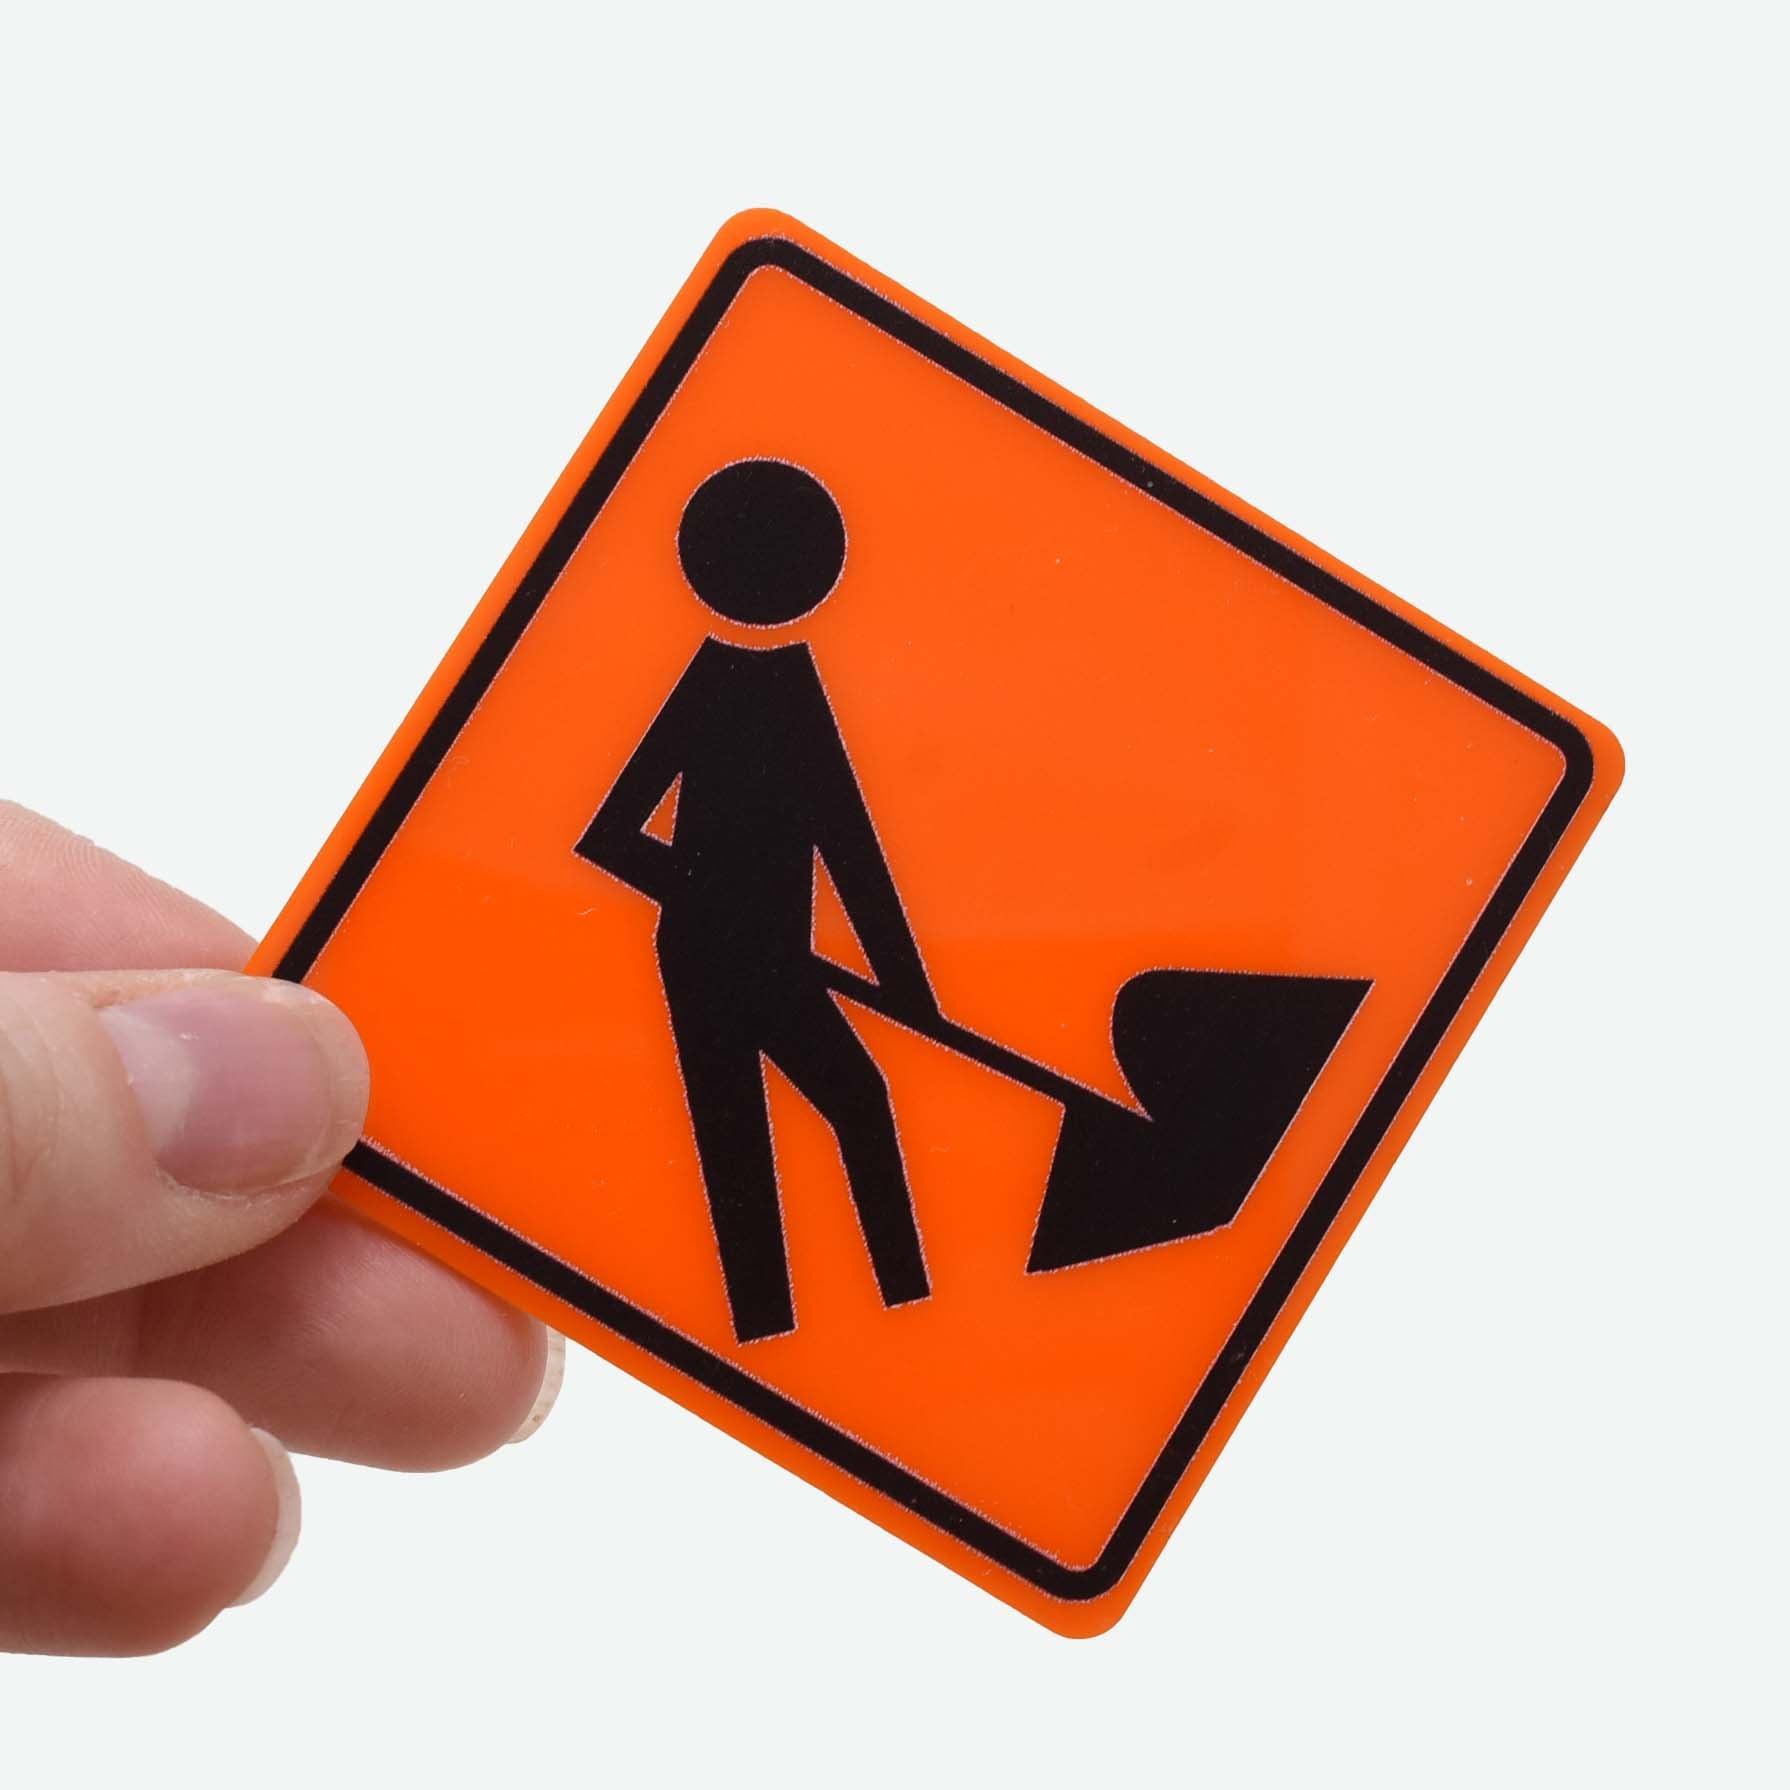 1:12 Scale Mini Dead End Roadwork Sign – Mini Materials